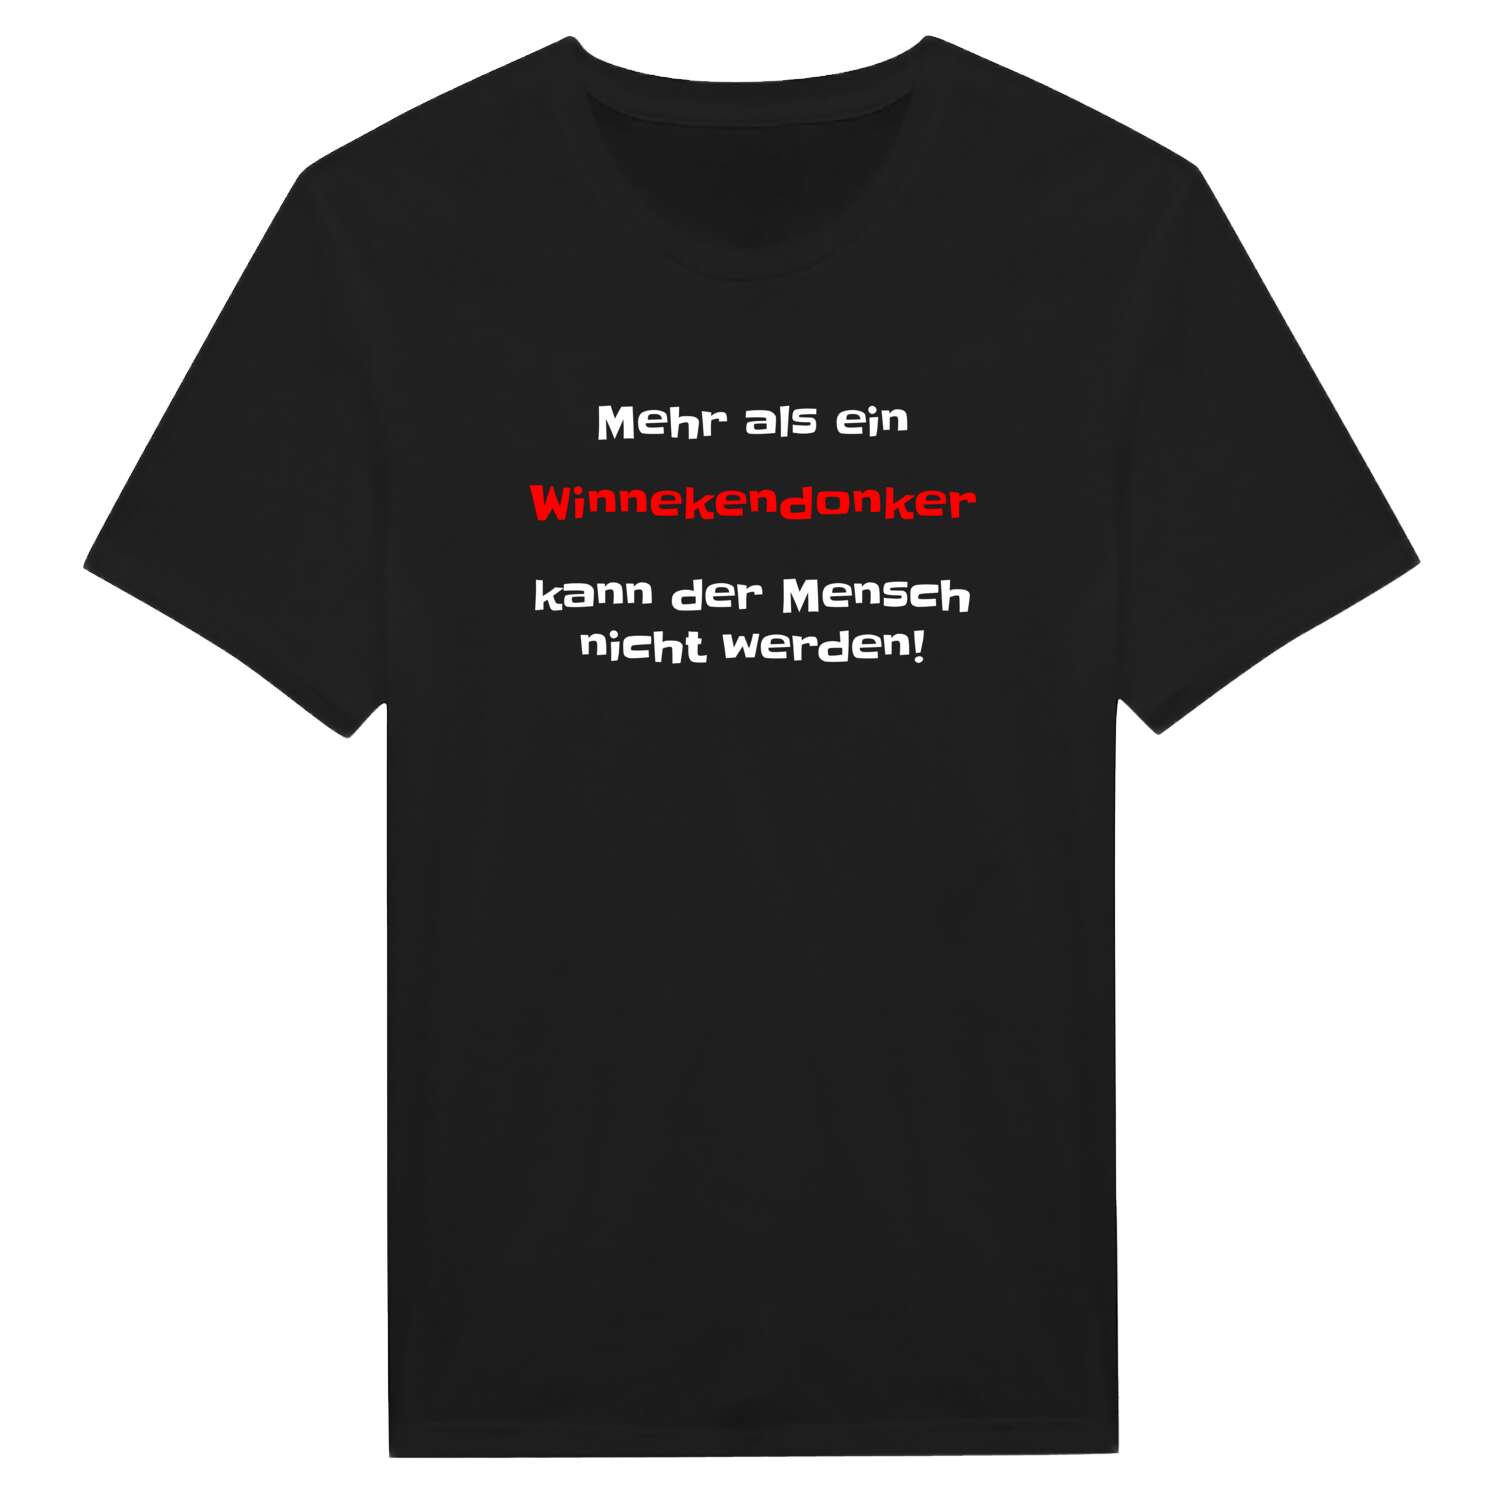 Winnekendonk T-Shirt »Mehr als ein«